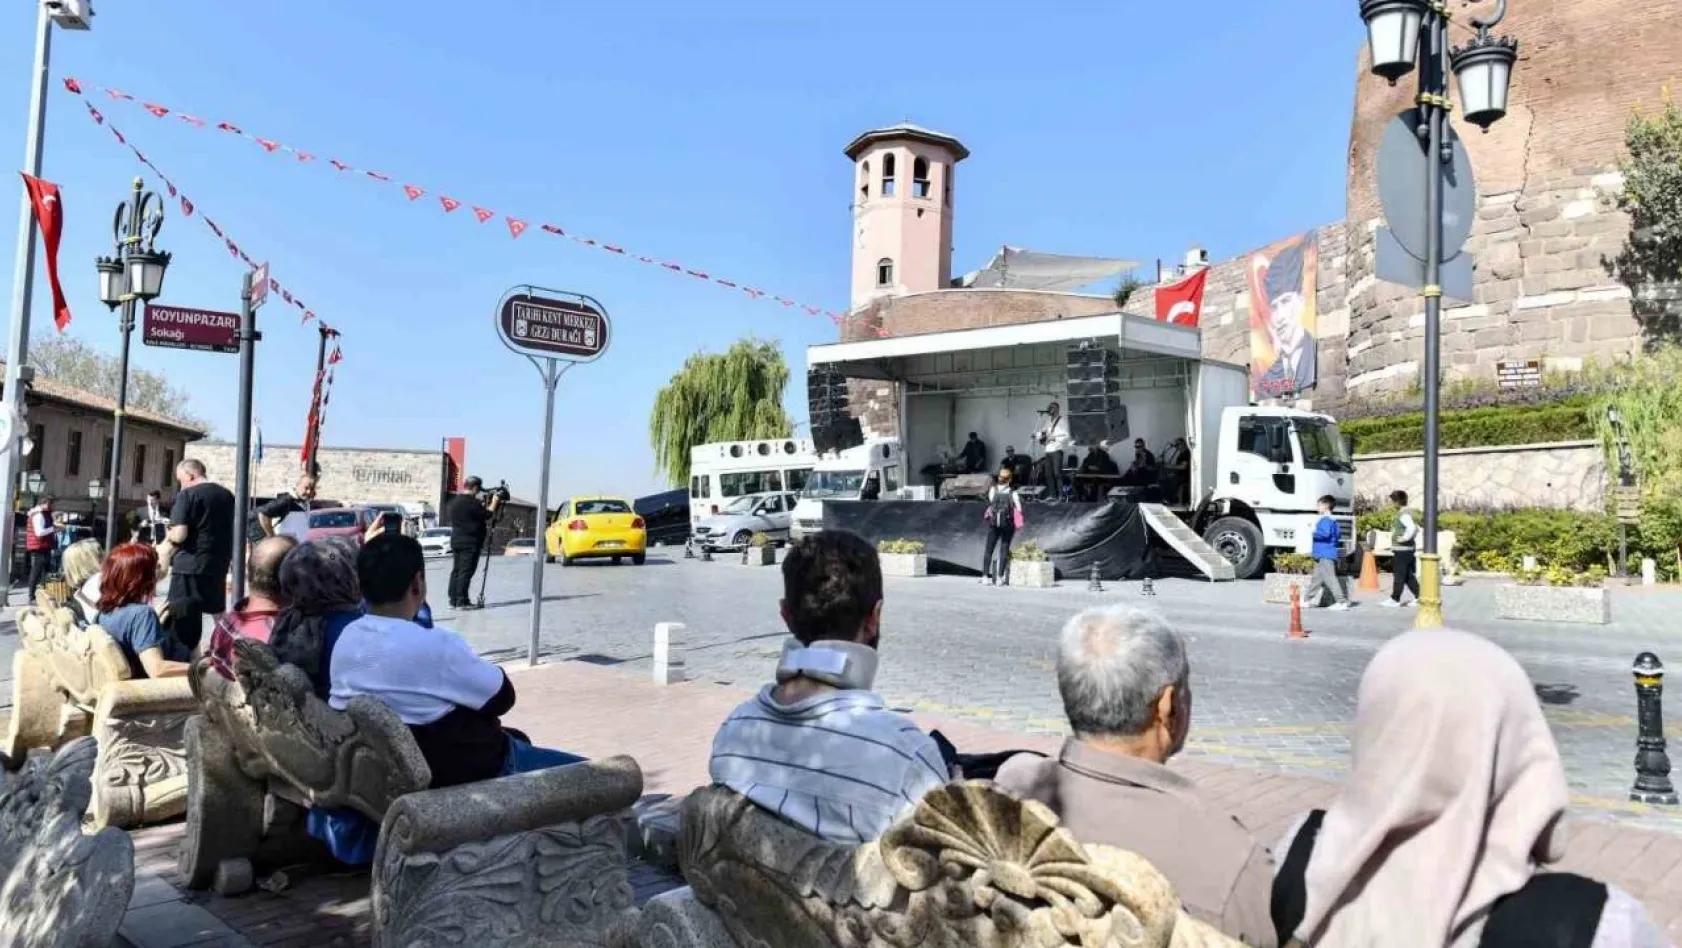 Ankara Büyükşehir Belediyesi cumhuriyeti çeşitli etkinlerle kutlamaya başladı